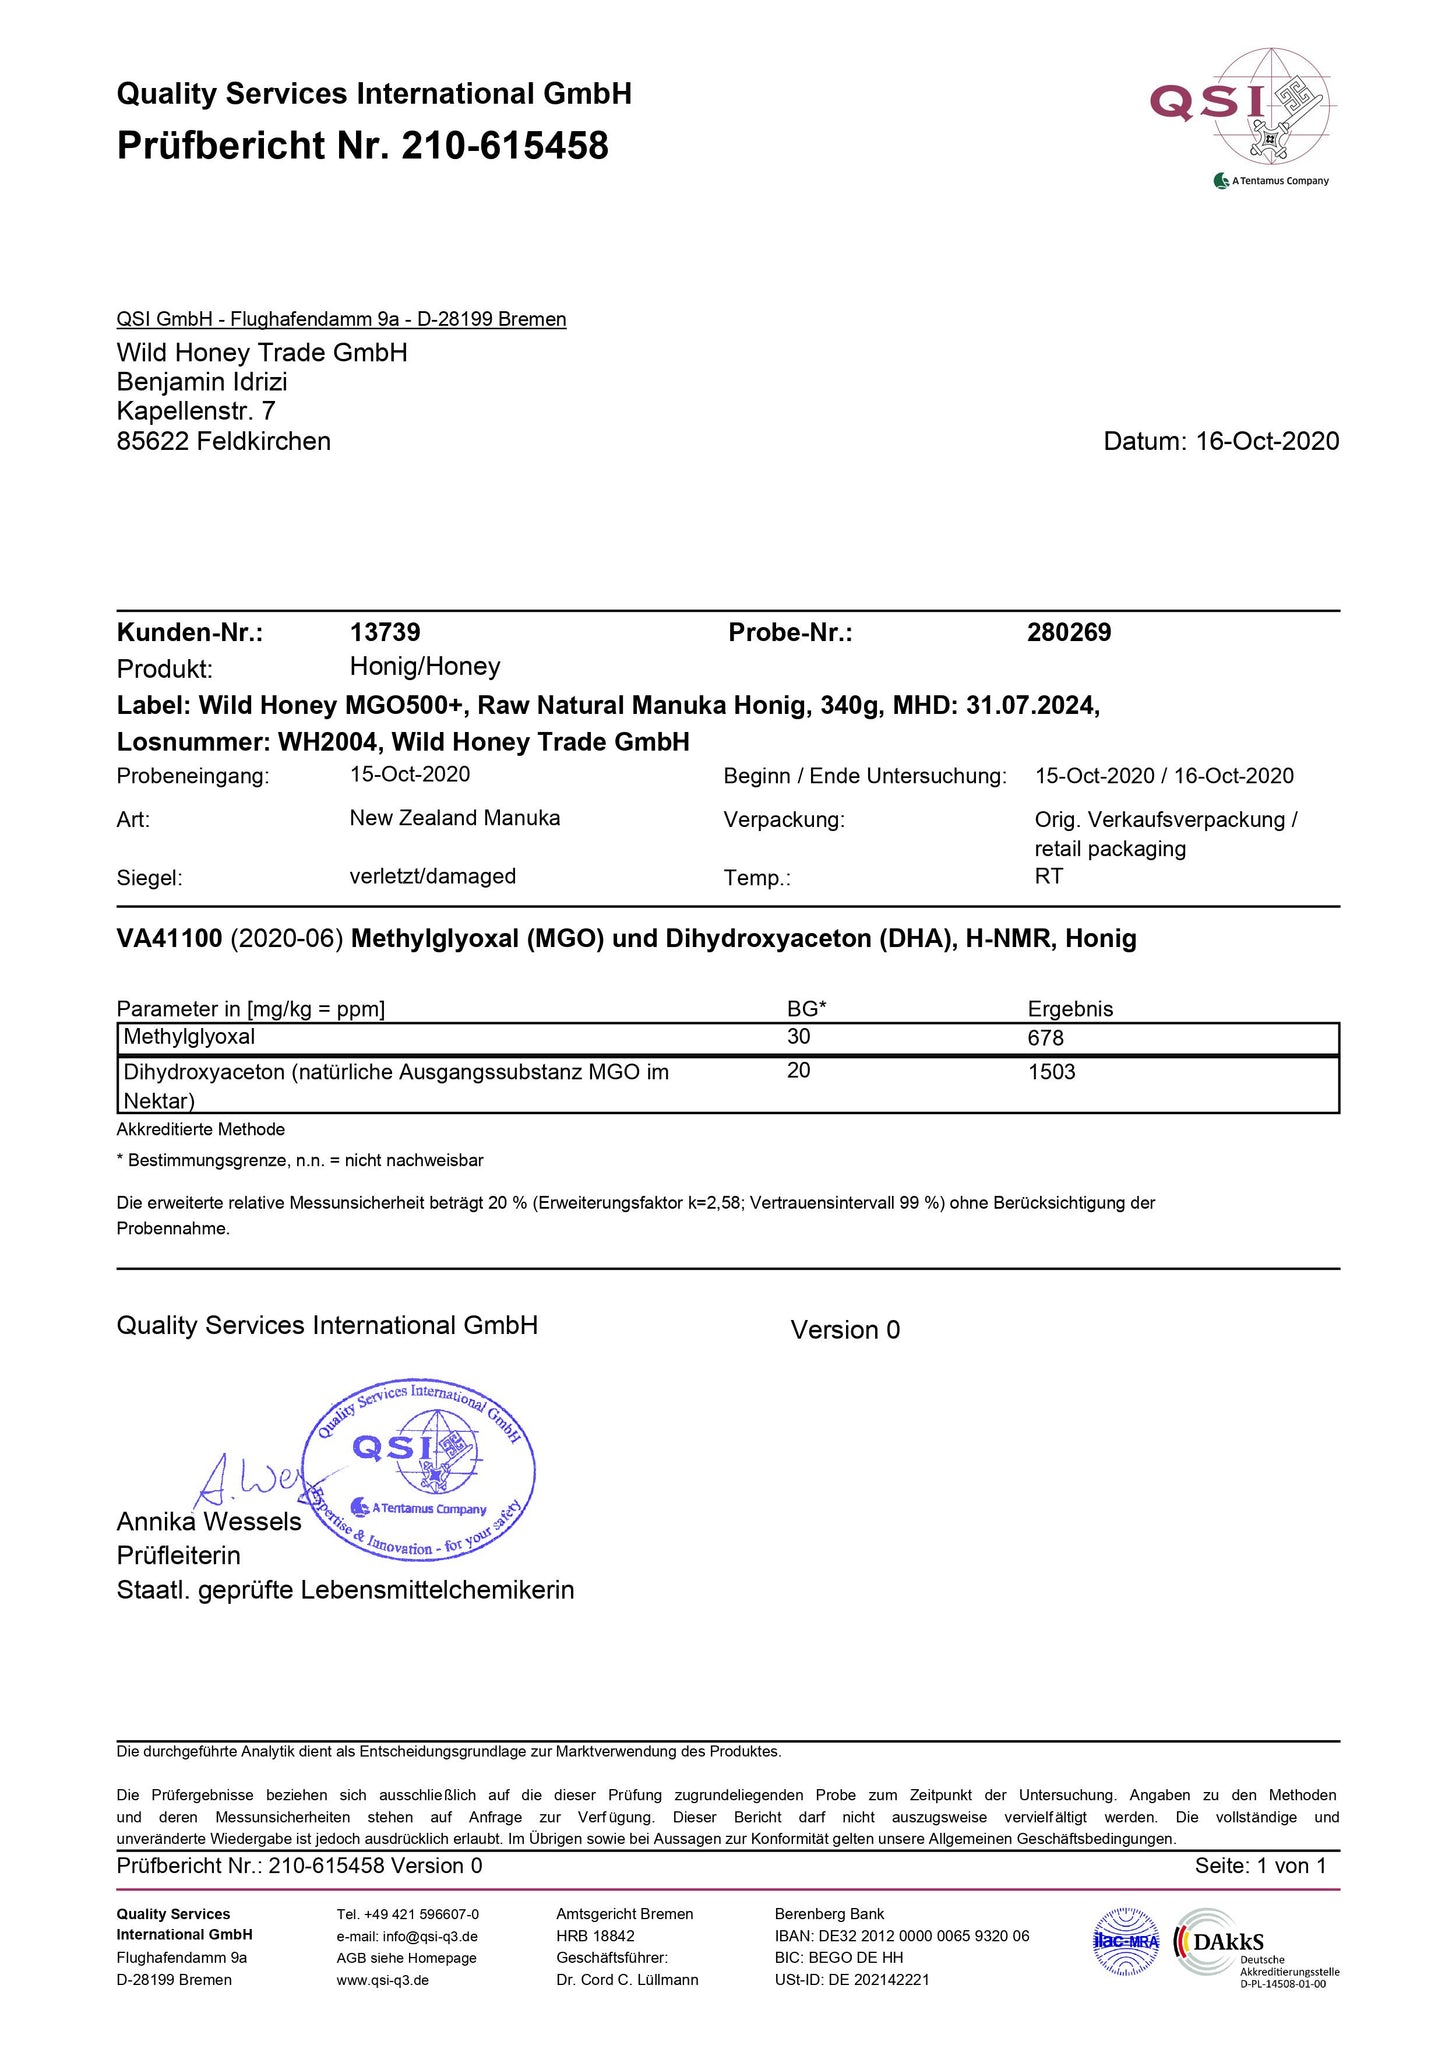 Zertifikat von QSI für Wild Honey Manuka MGO500+